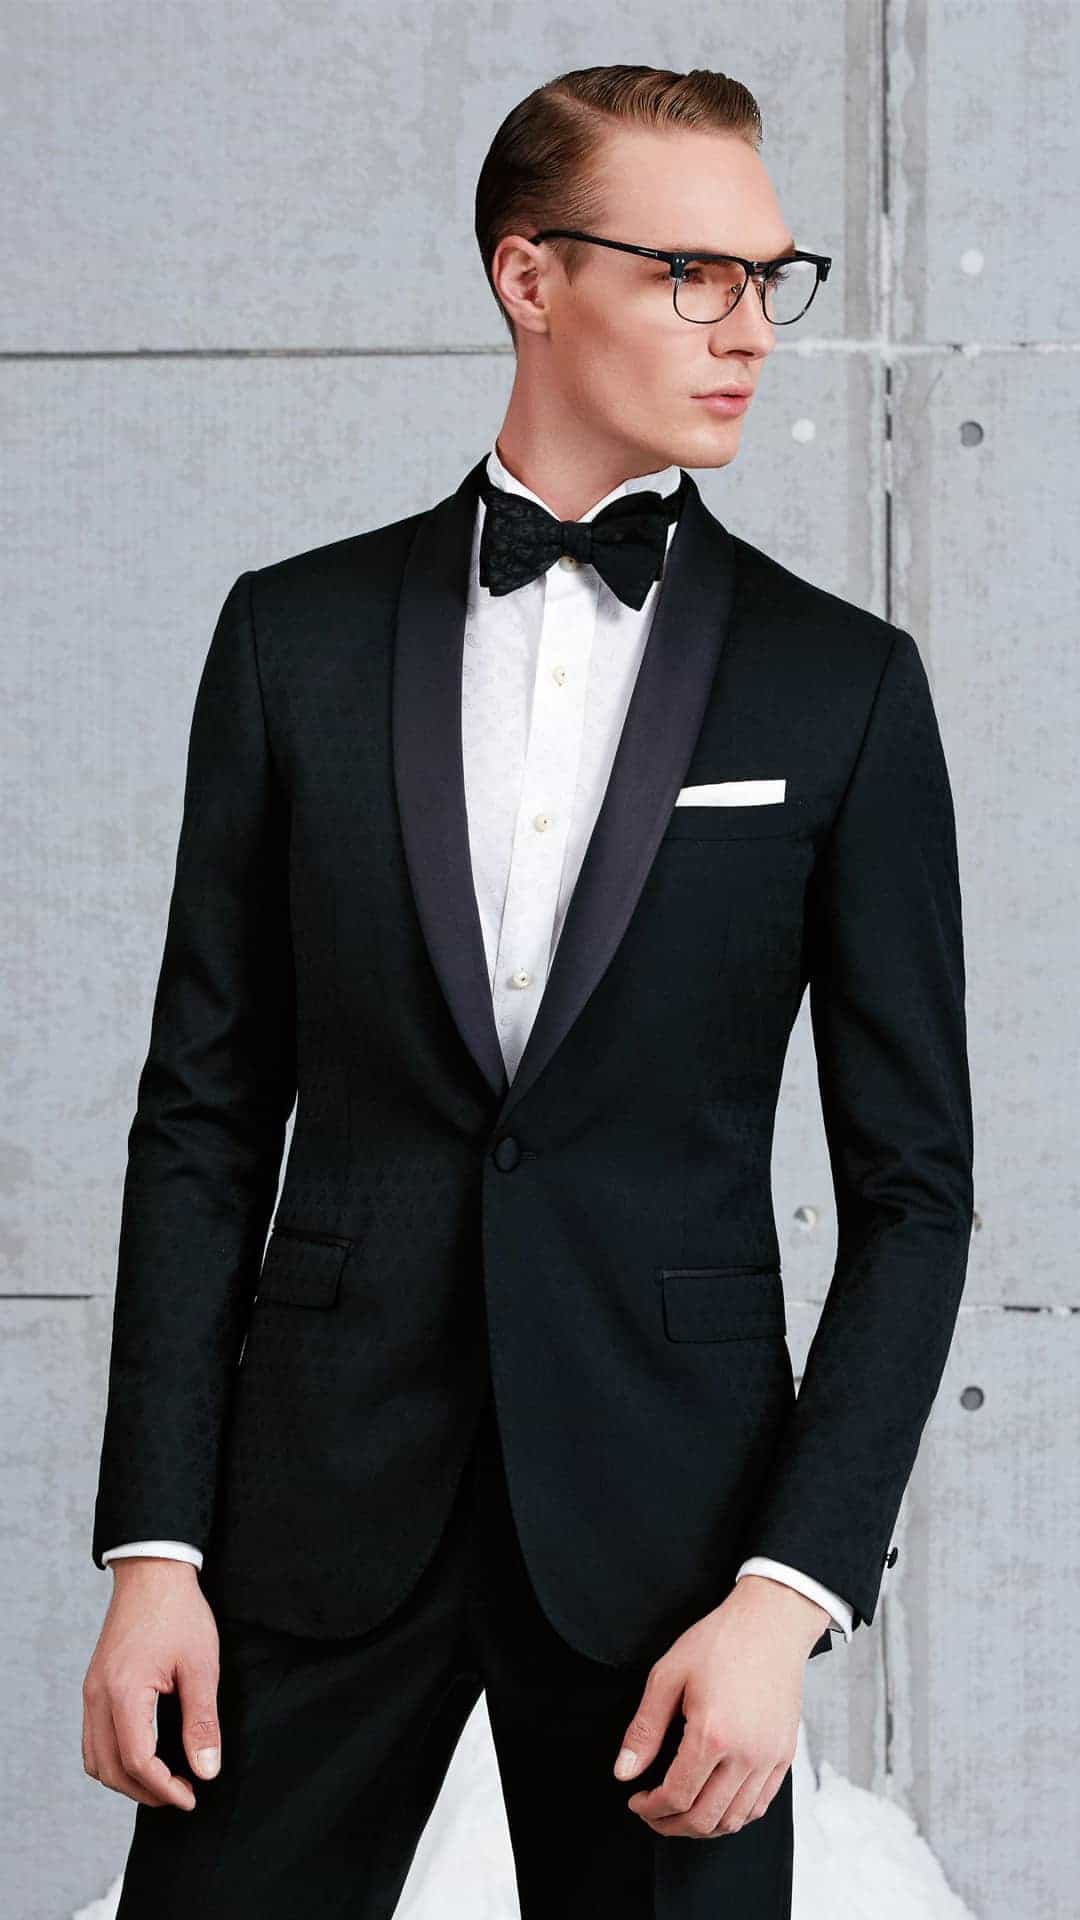 Dark tuxedo suit